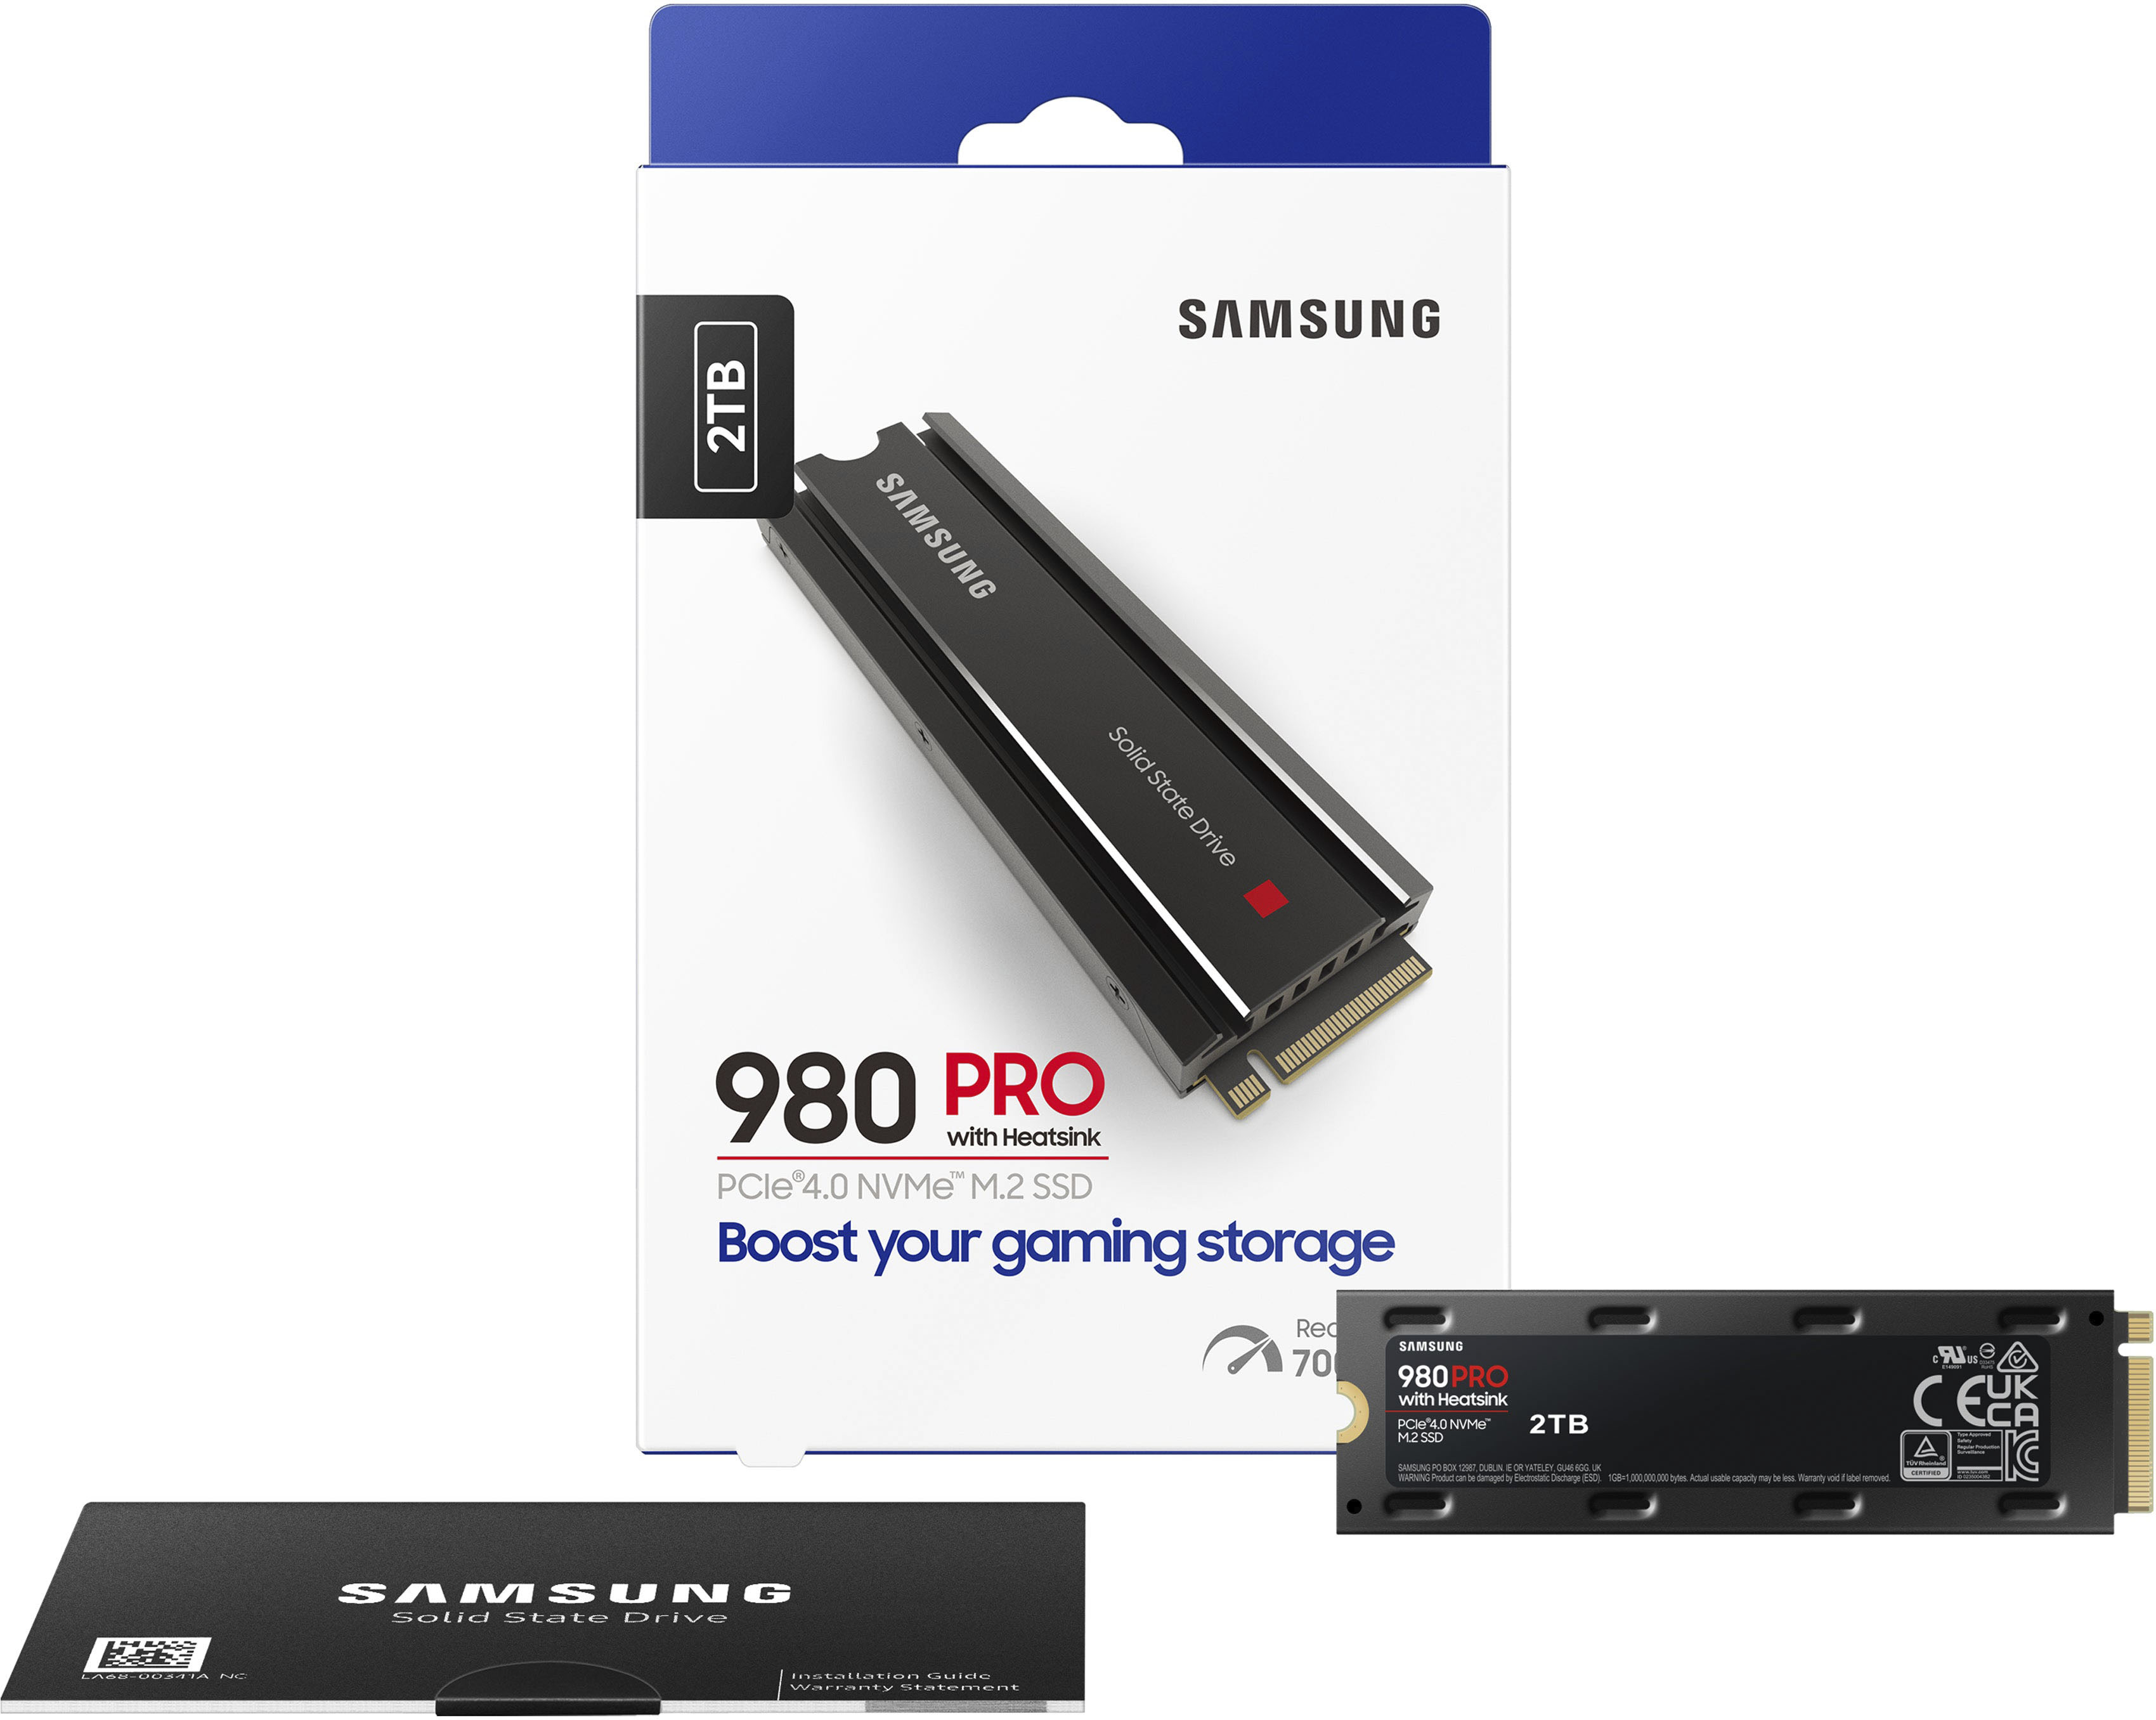 Samsung 980 PRO Heatsink 2TB Internal SSD PCIe Gen 4 x4 NVMe for 